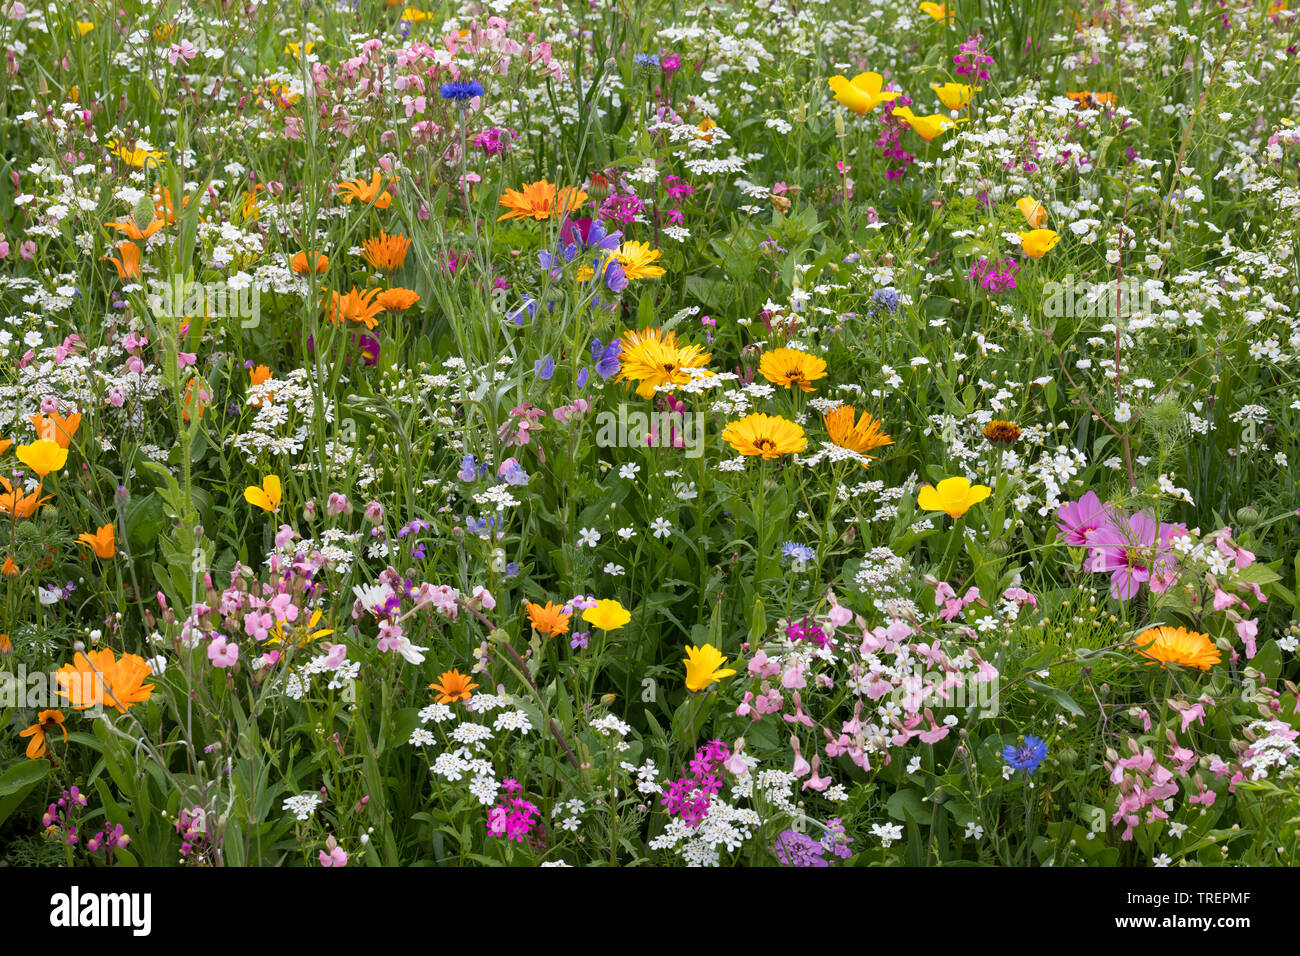 Blumenwiese, Wildblumenwiese, Wildblumen-Wiese, Blumenmischung, Wildblumen, Blumenmischung 'Werratal', Insektenschutz, prato di fiori selvaggi Foto Stock